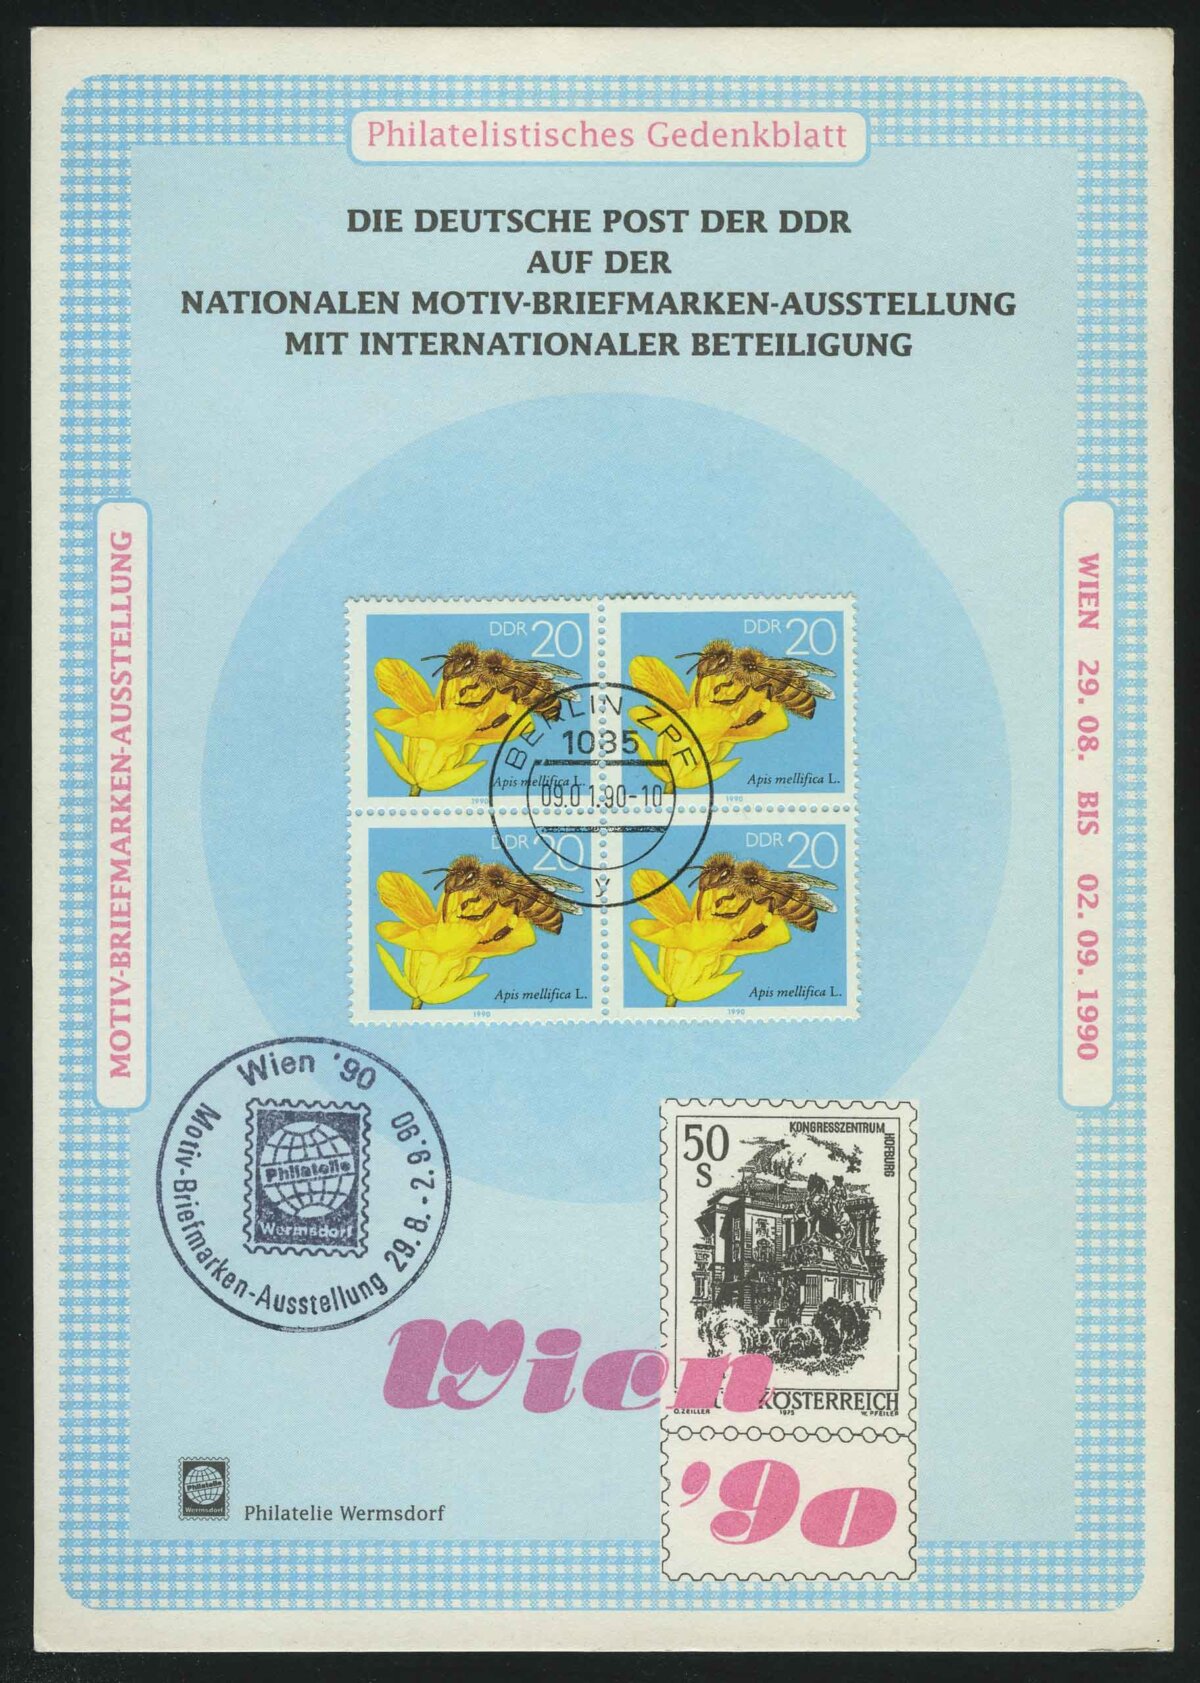 1990. ГДР. Памятный филателистический листок. Wien '90